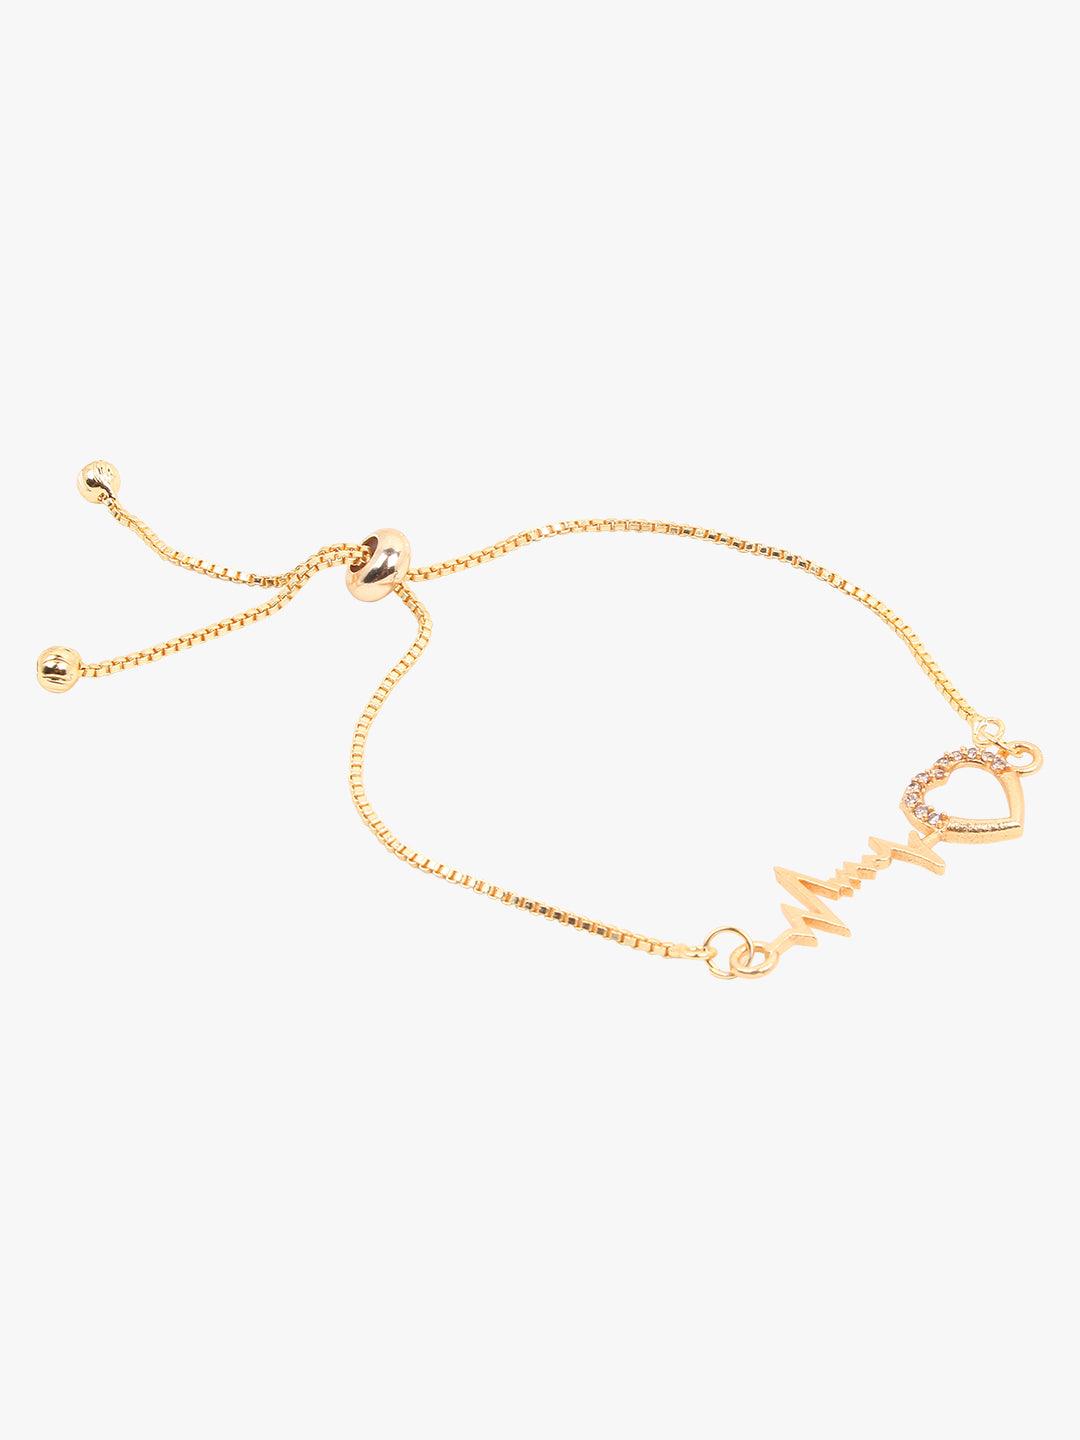 Golden Hearbeat Charm Bracelet - Steorra Jewels